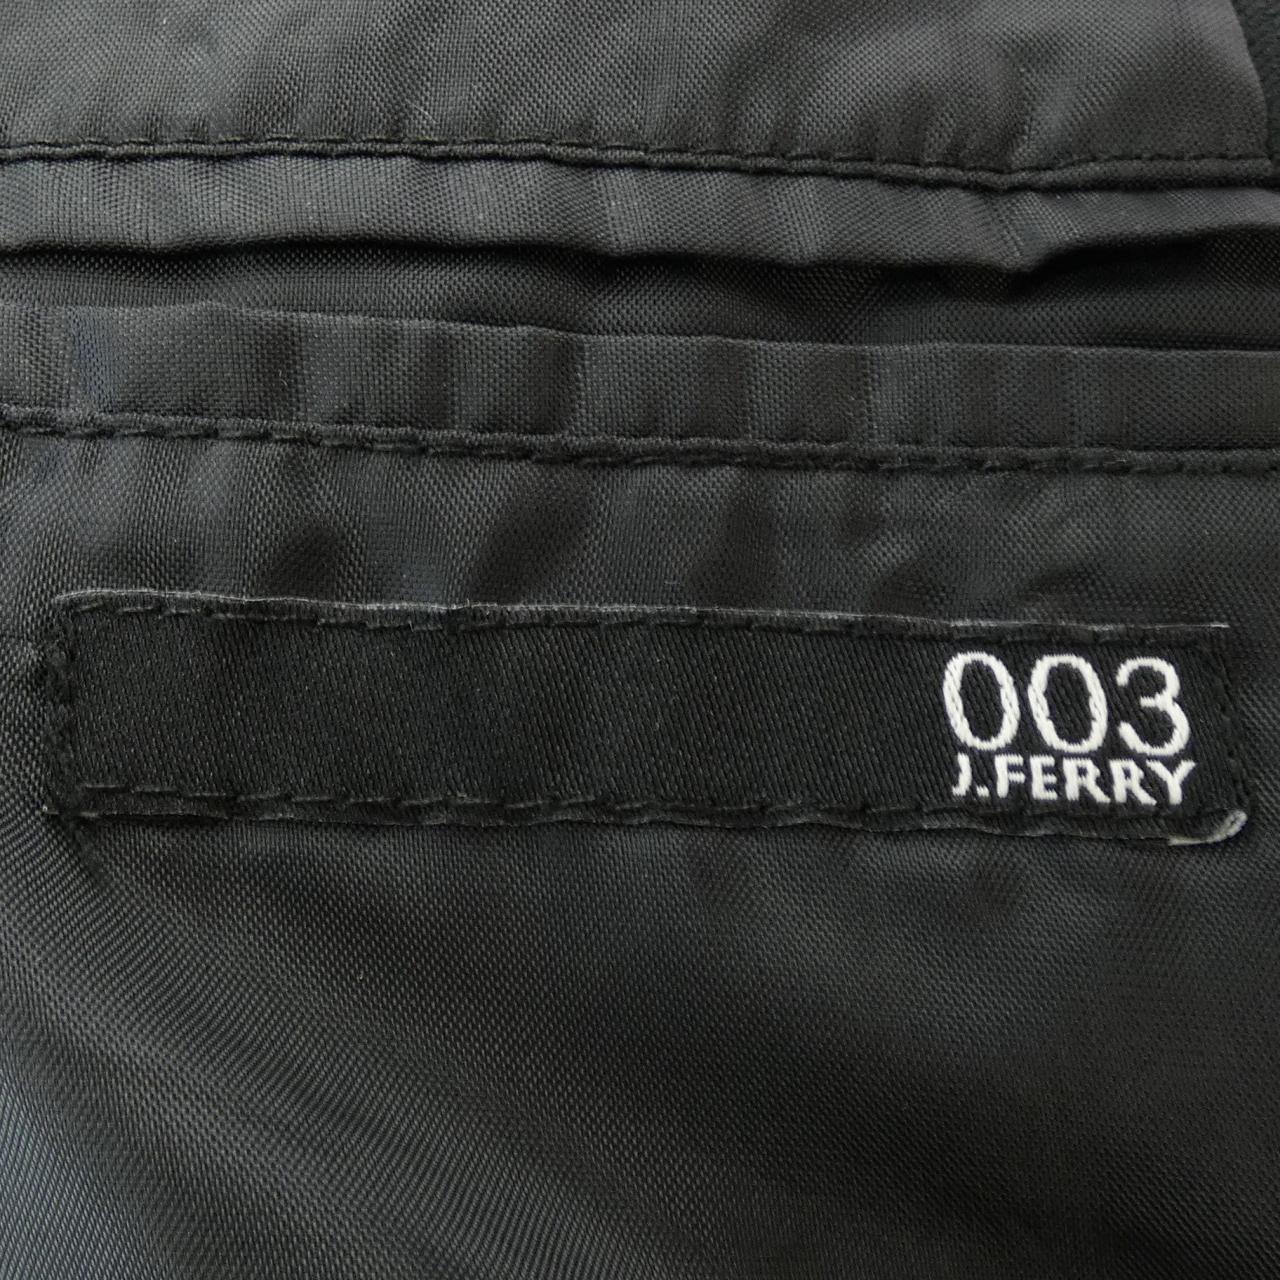 J.FERRY suit